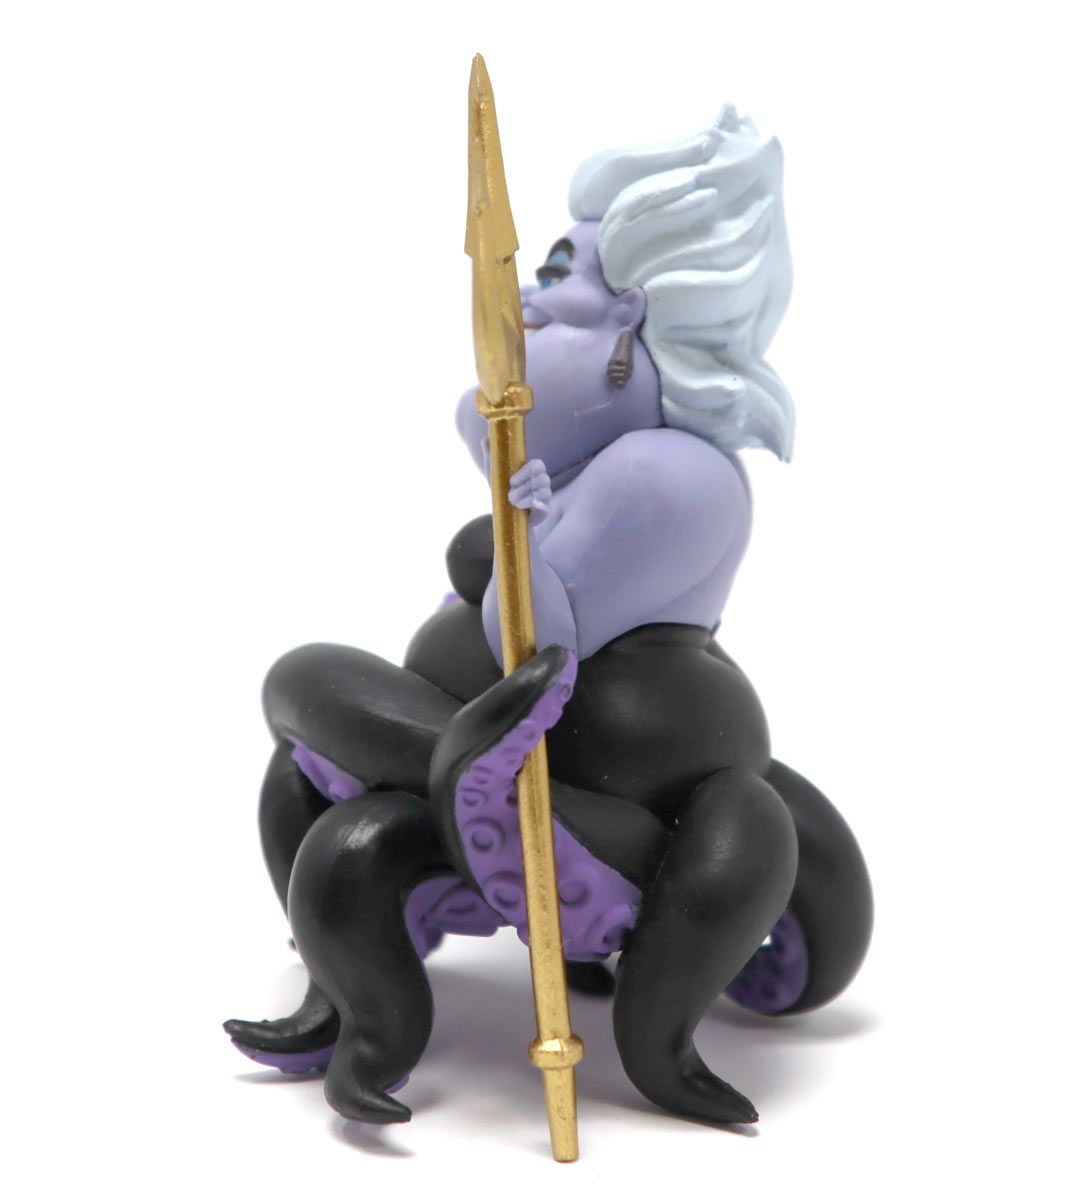 Mini Egg Attack Series - Ursula (Disney Villains)